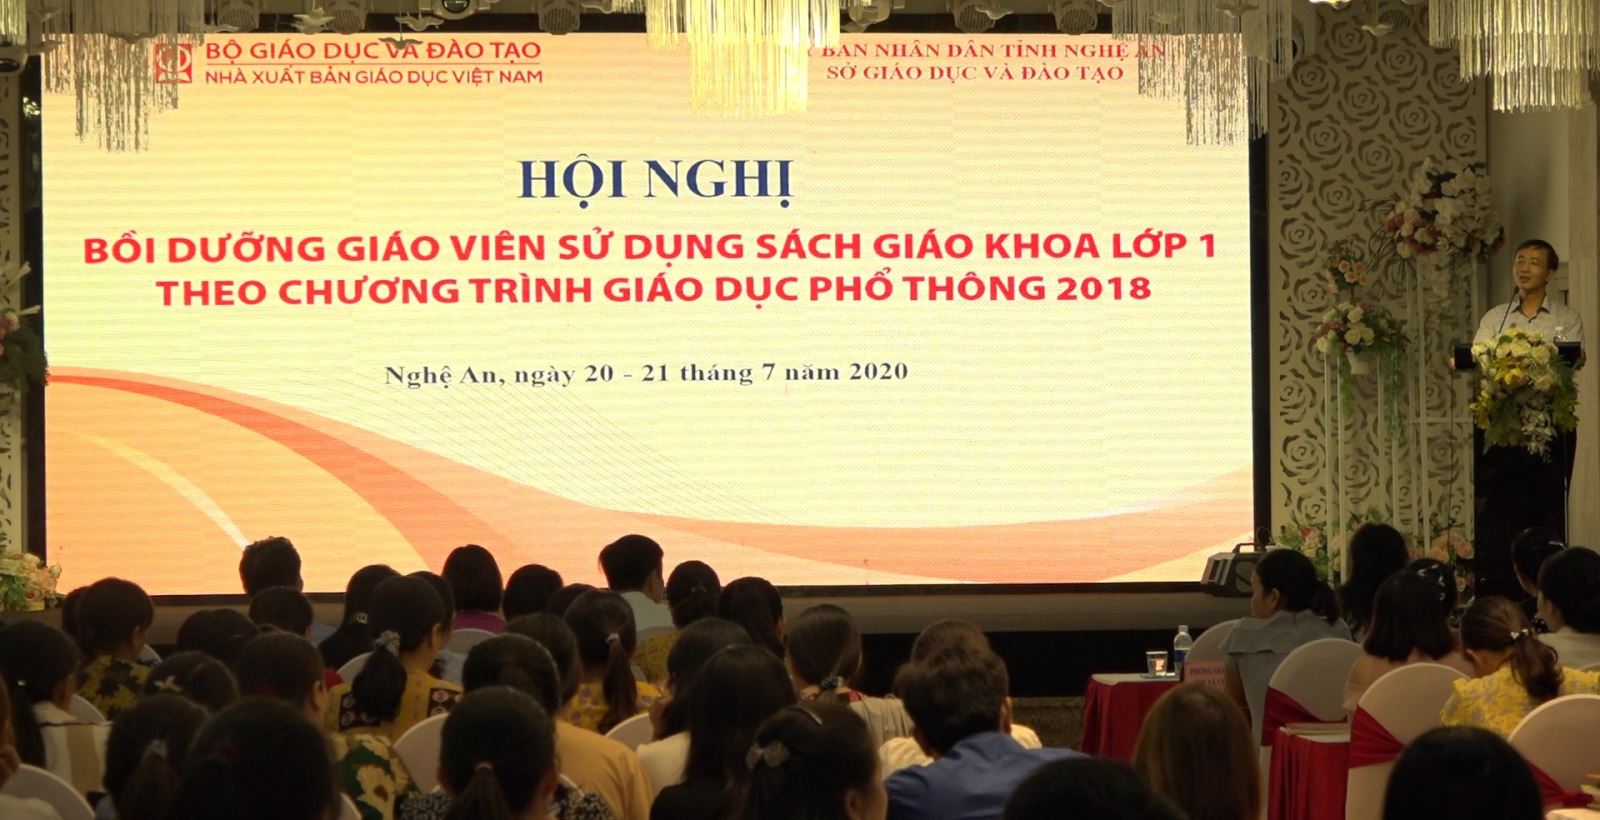 Tập huấn sử dụng sách giáo khoa lớp 1 năm học 2020 – 2021 tại Nghệ An